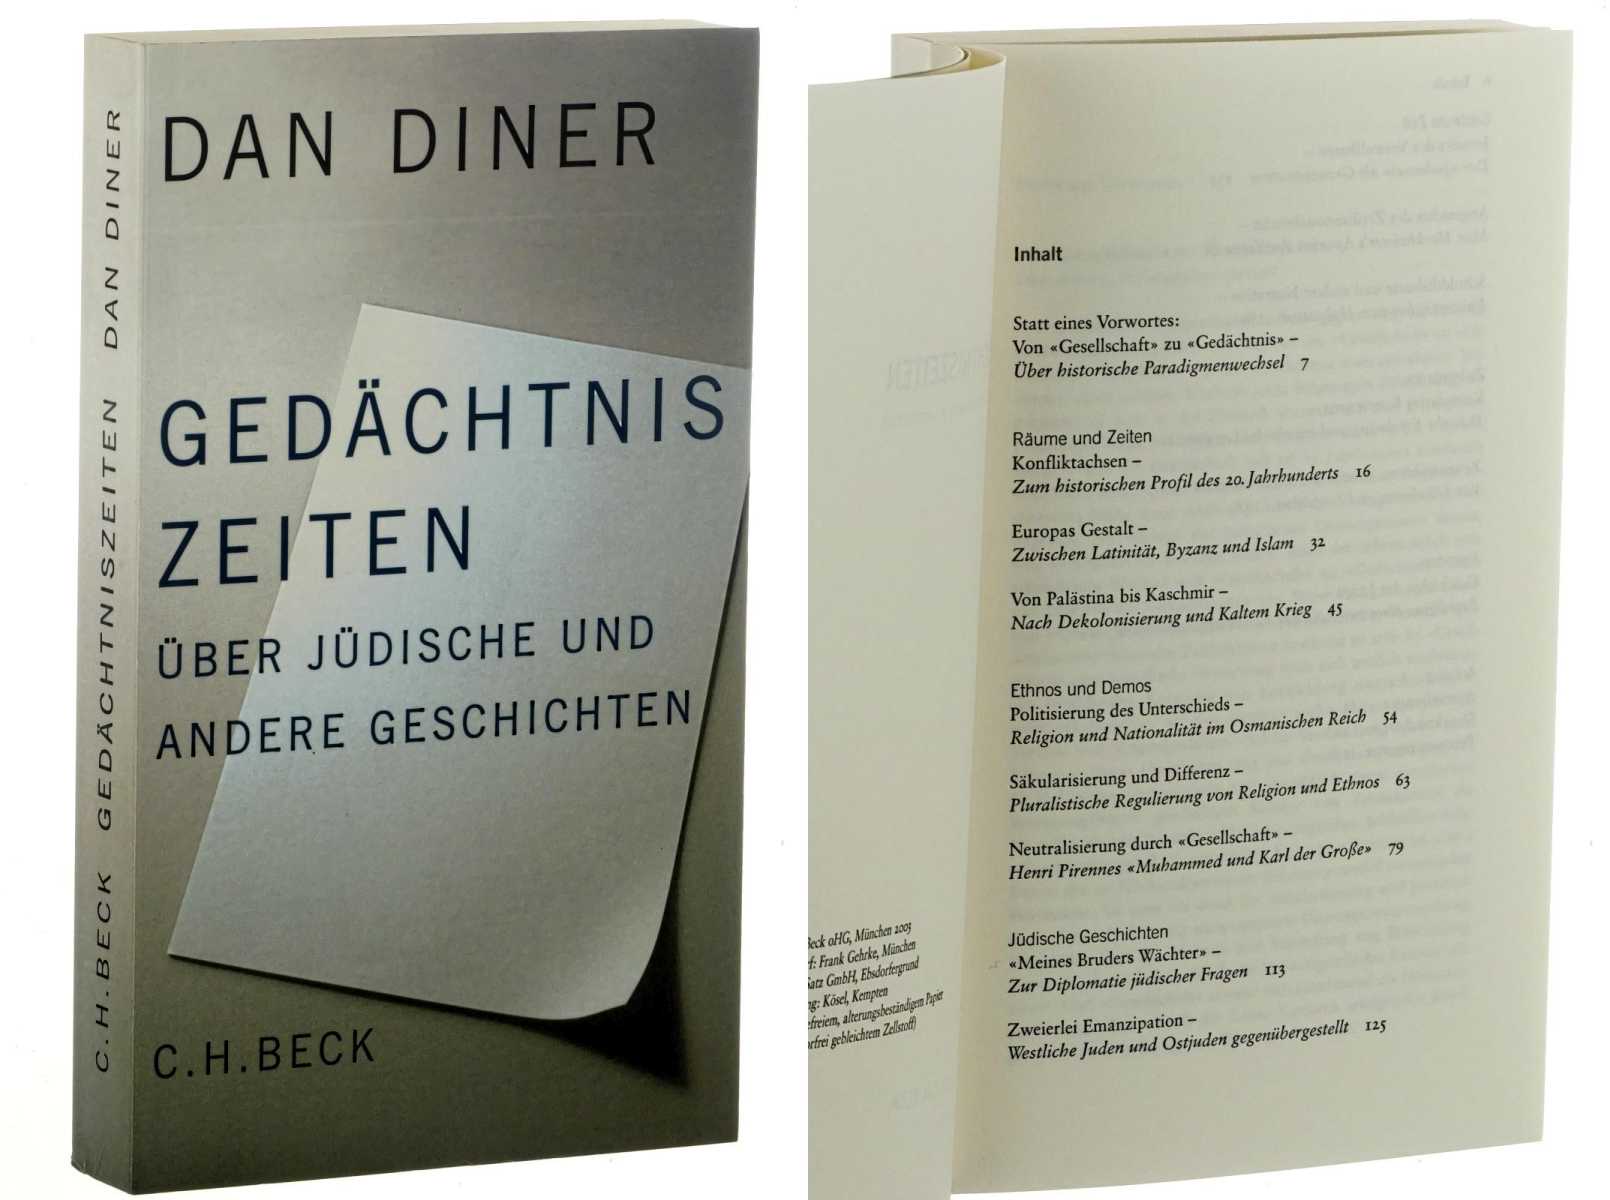 Diner, Dan:  Gedächtniszeiten. Über jüdische und andere Geschichten. 